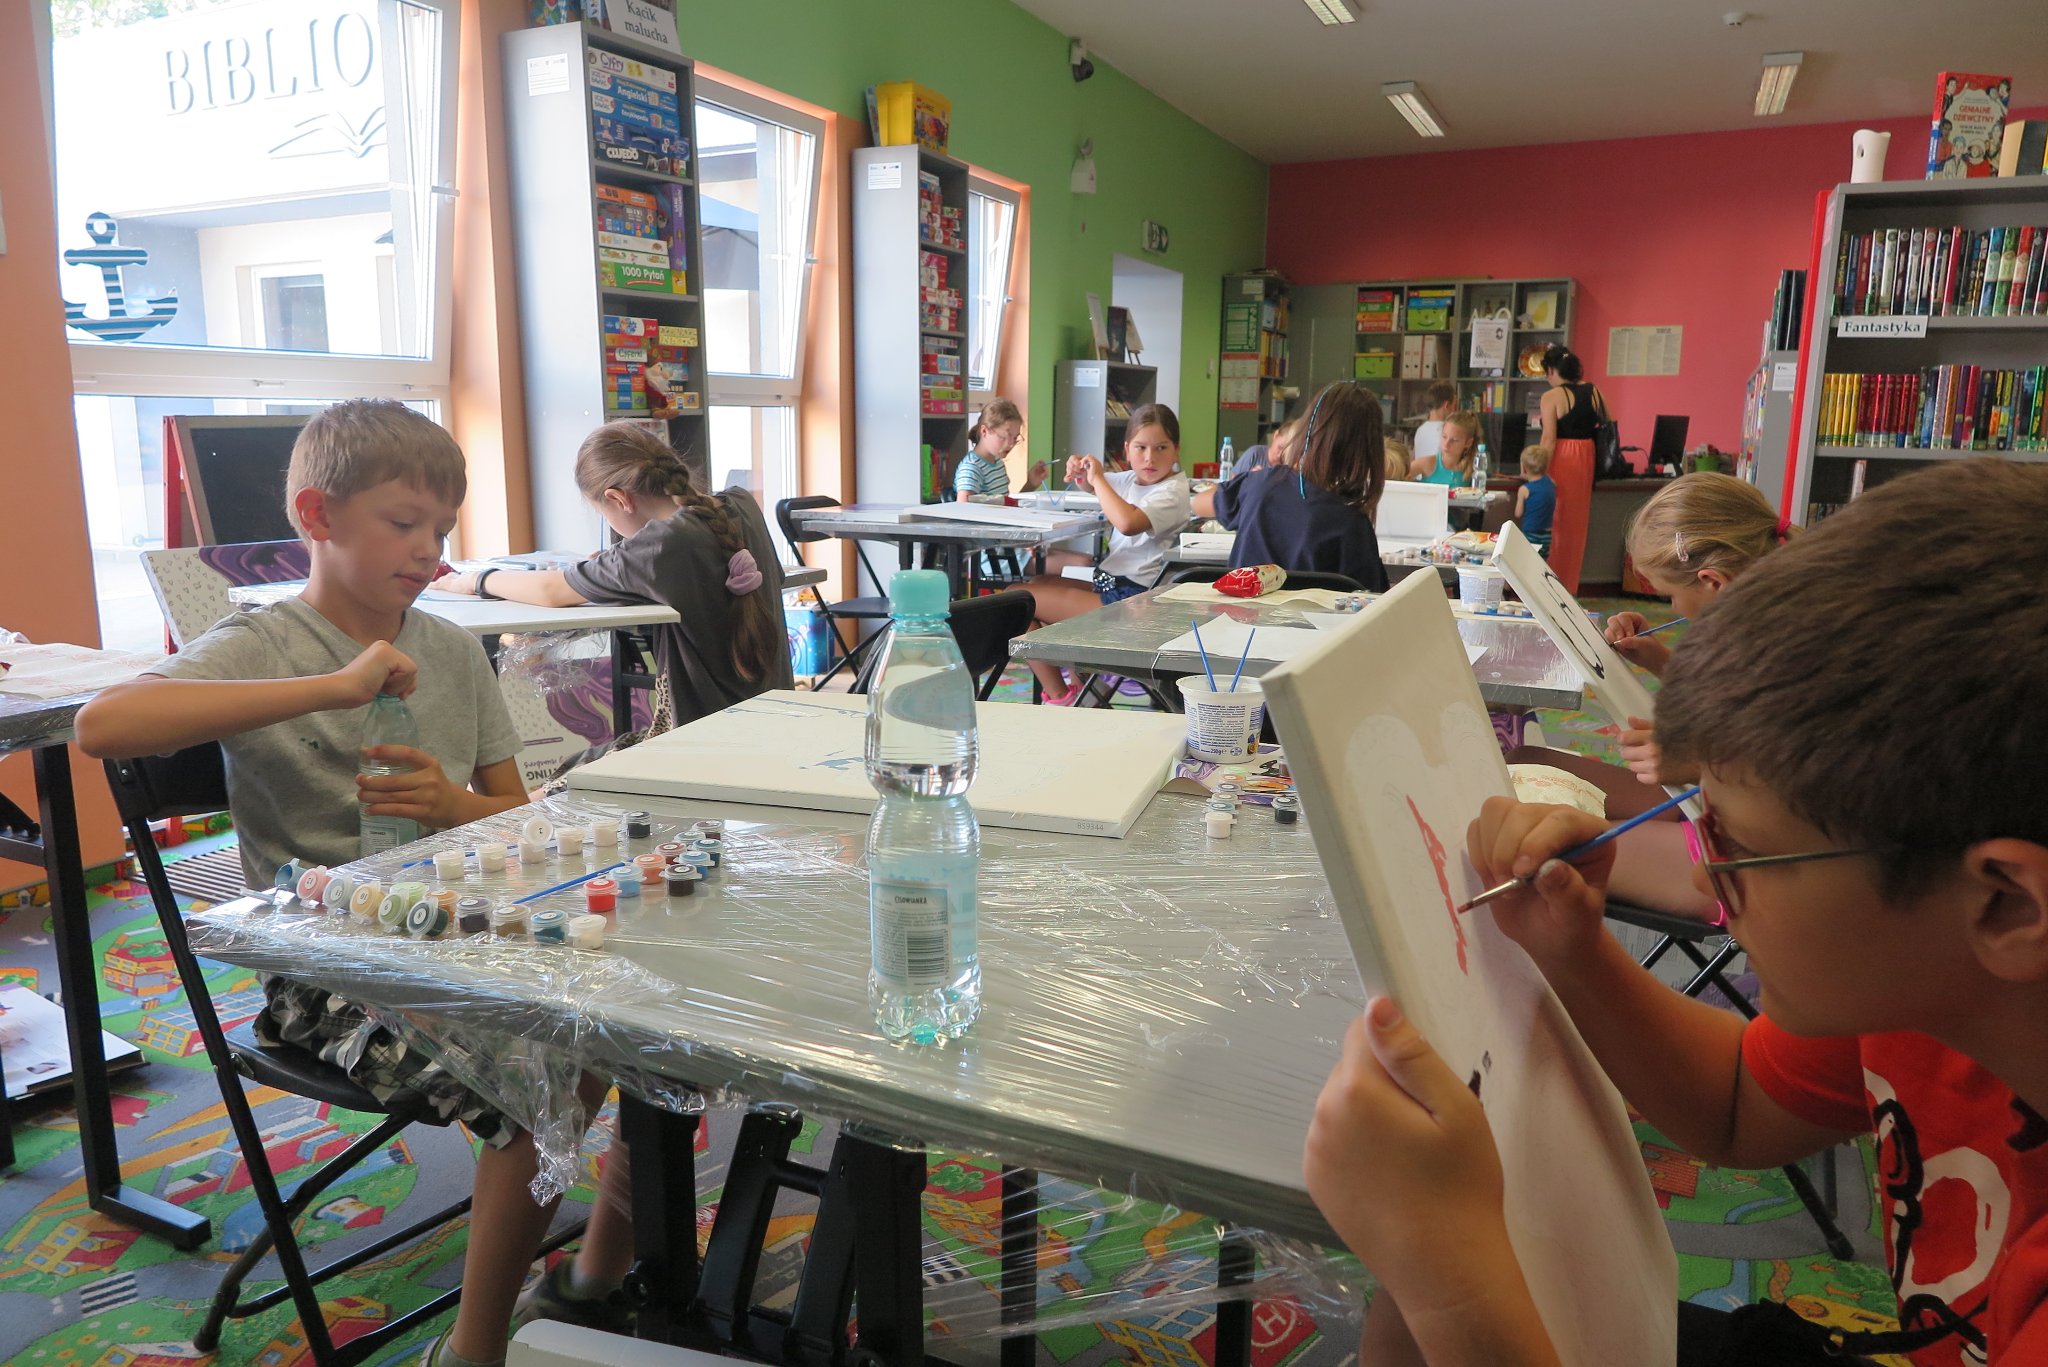 uczestnicy warsztatów plastycznych malowania na płótnie, siedzą przy stolikach na których leżą płótna i farby, malują obrazy